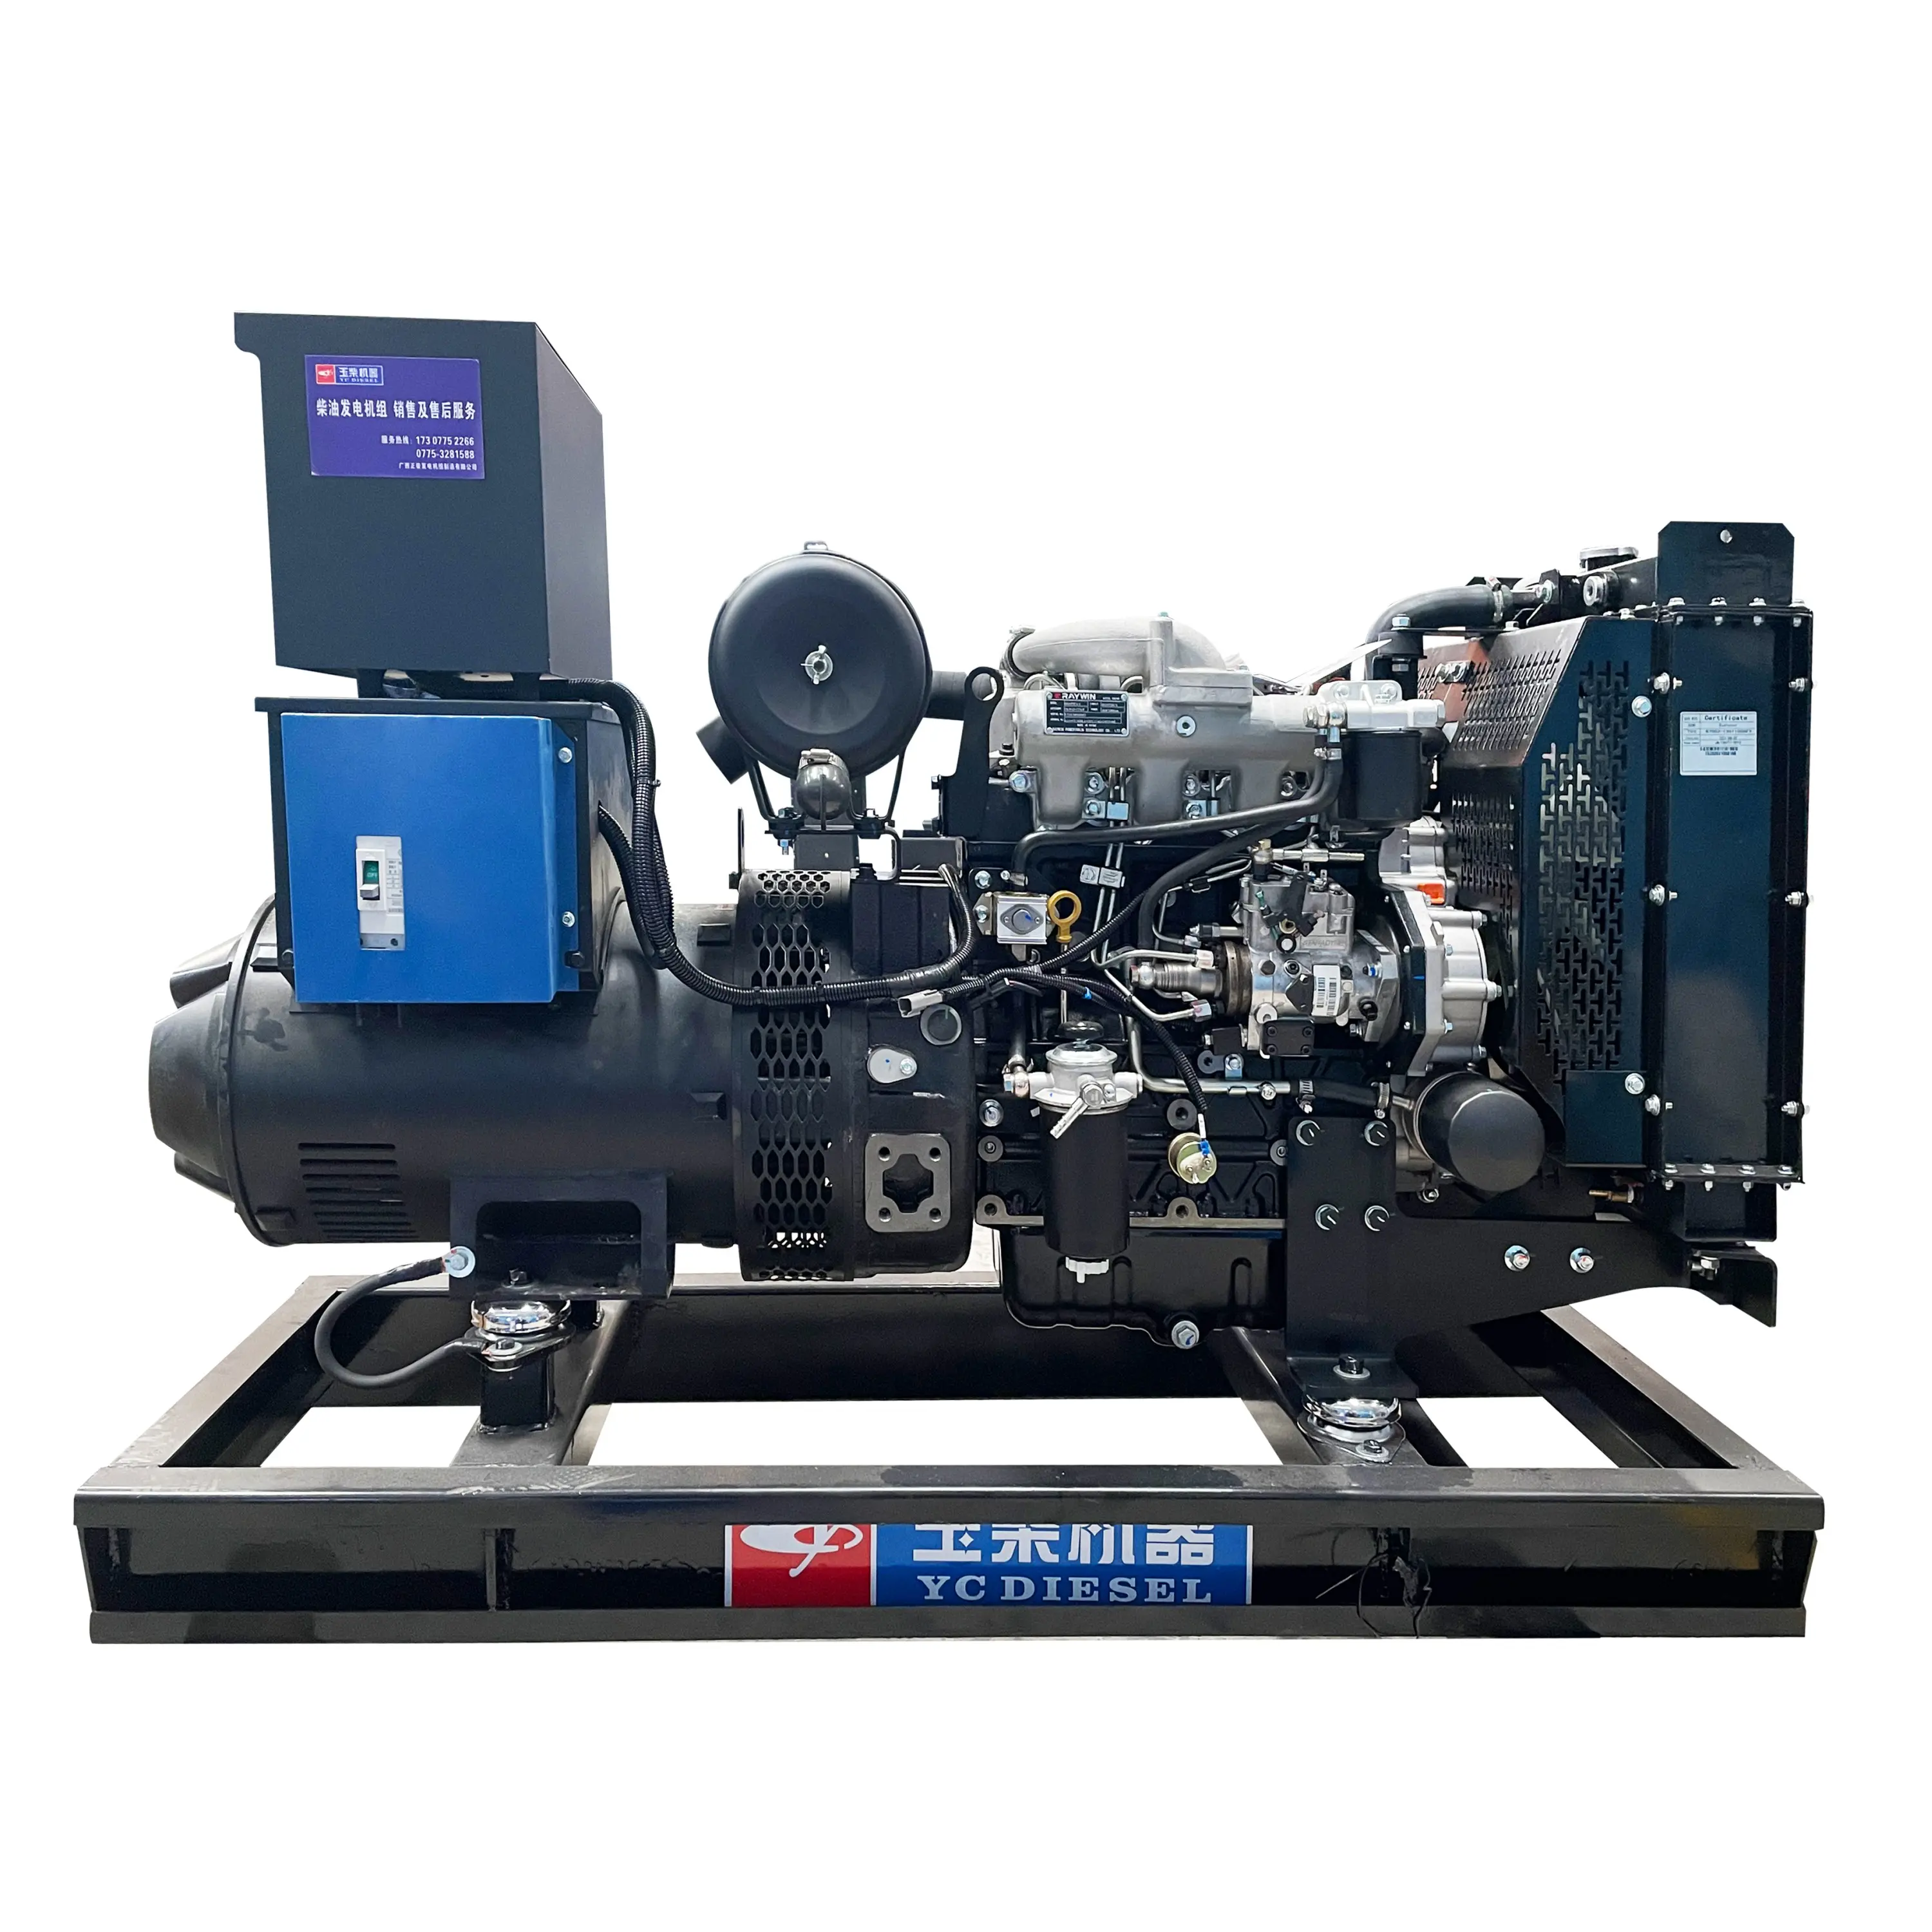 Hot bán Chất lượng cao 20kW zc28gf1 động cơ diesel 4 Xi Lanh làm mát bằng nước cho máy móc xây dựng sử dụng nhà và các trang trại